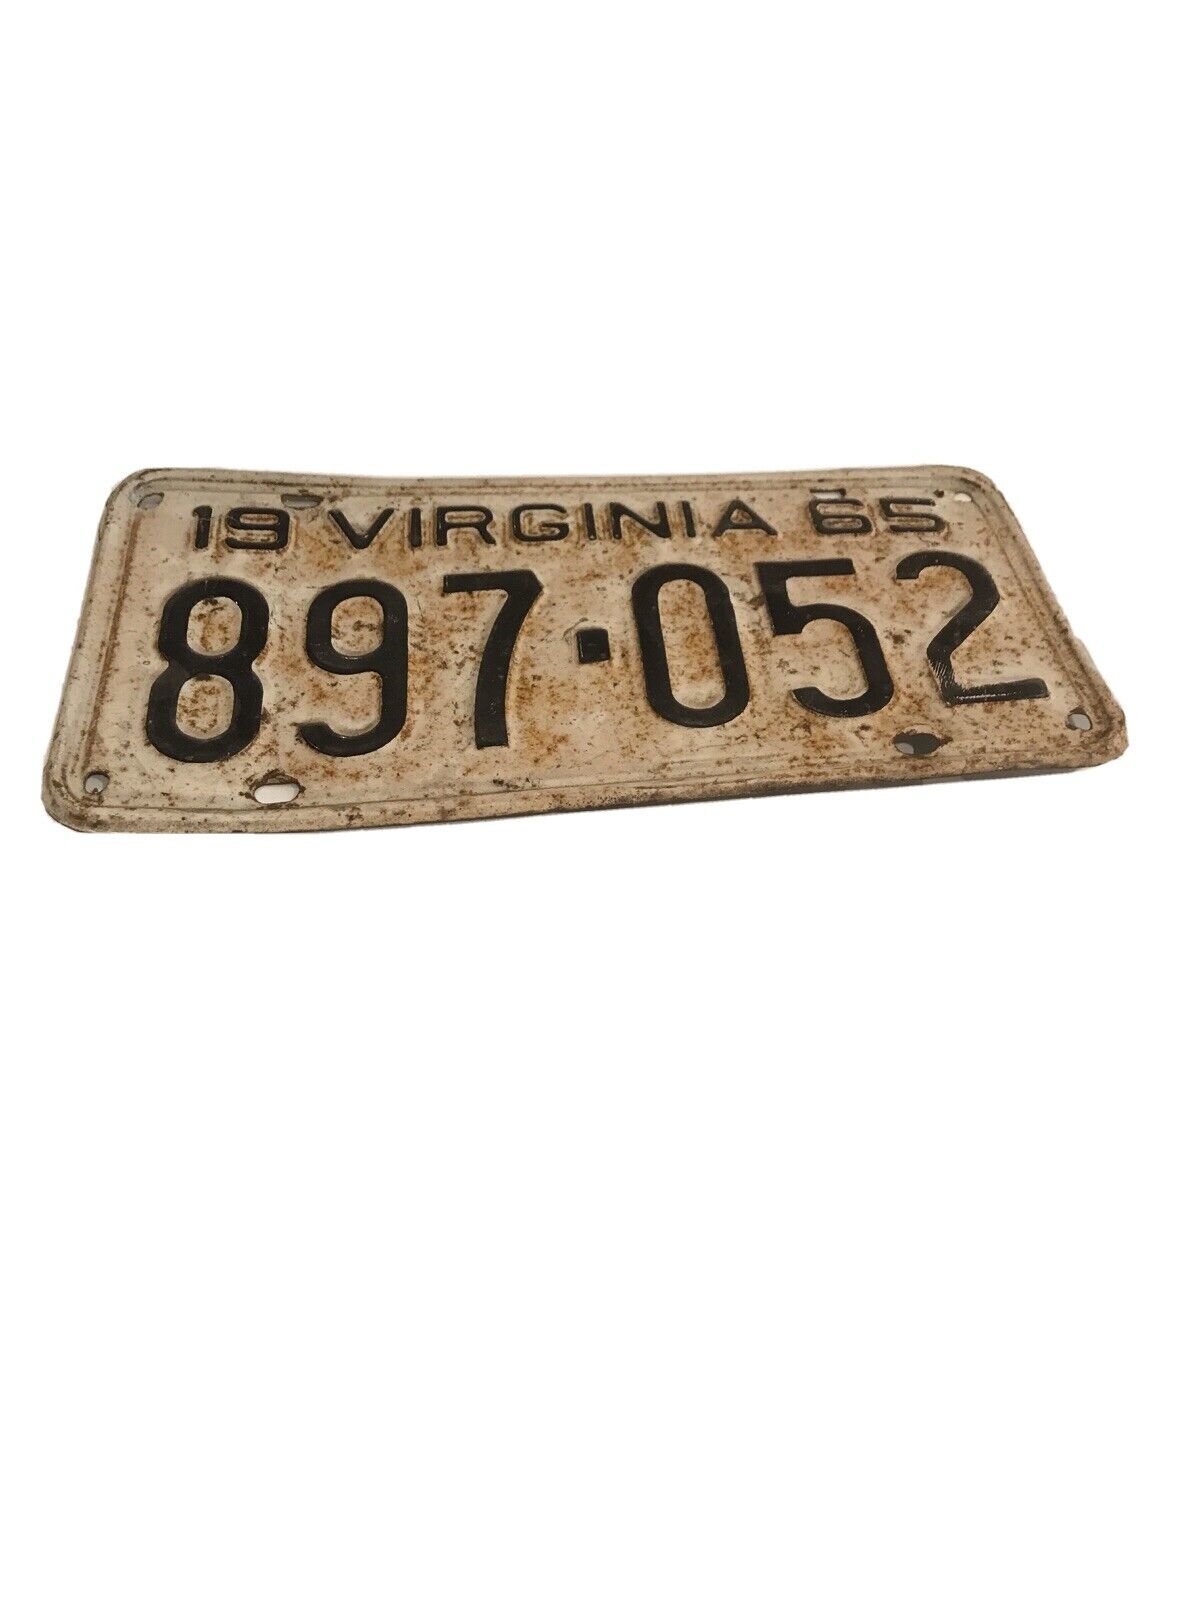 Vintage 1965 Virginia License Plate  897-052